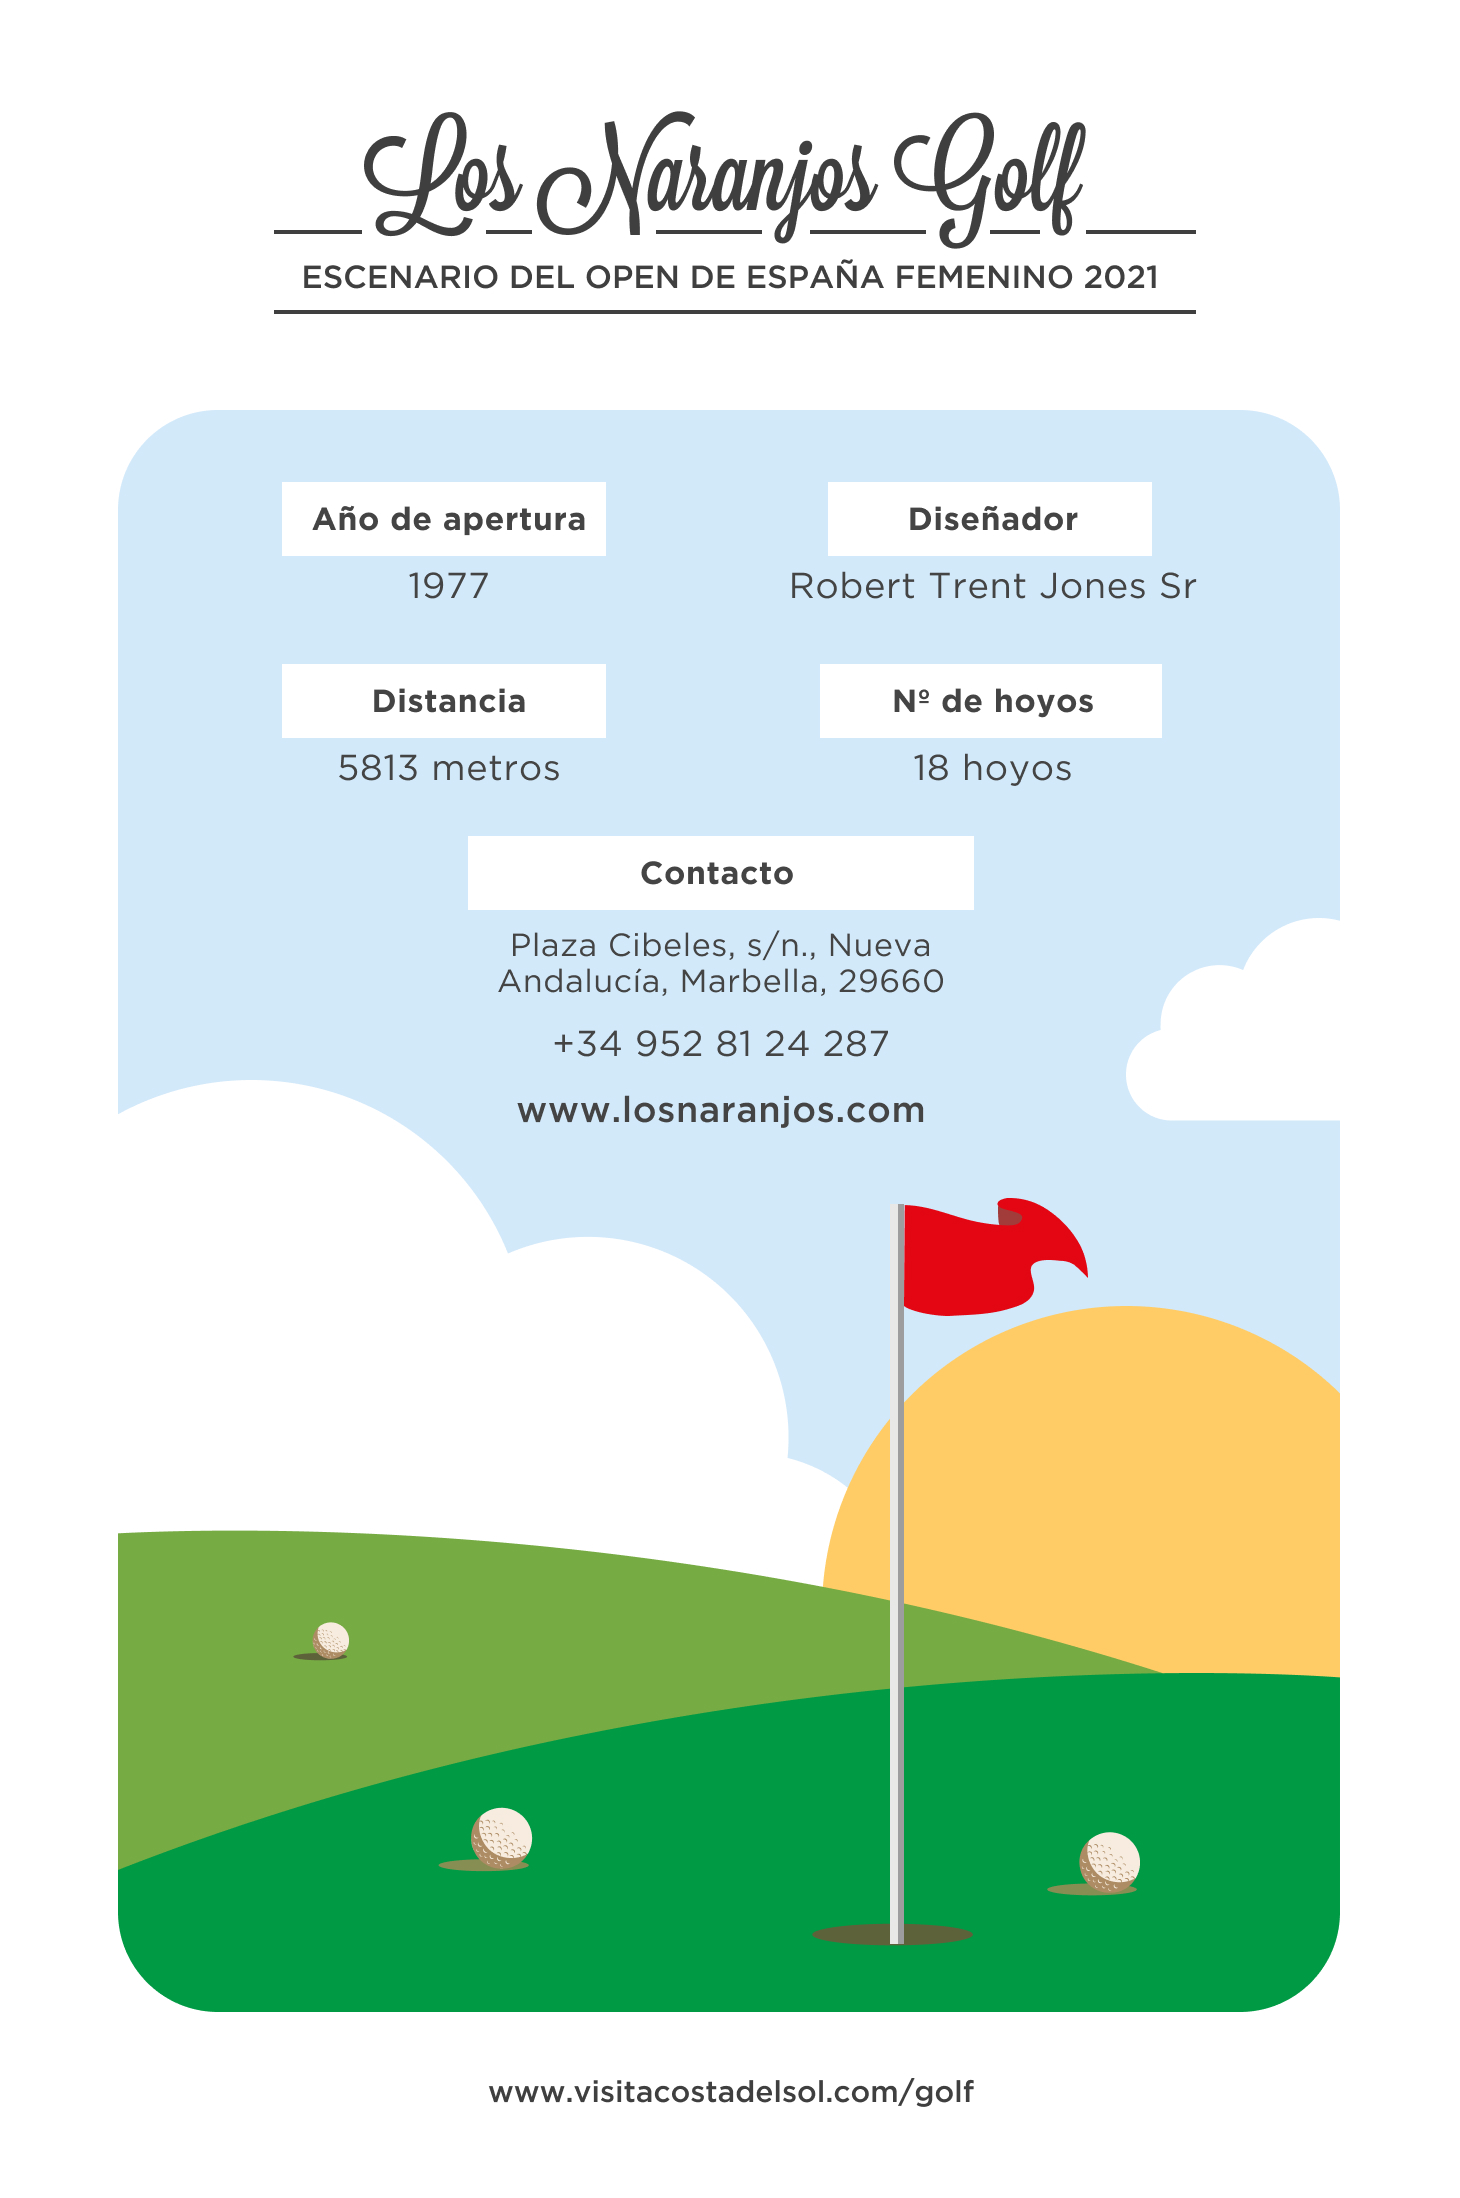 csol_#6_infografia_golf_naranjos-ES